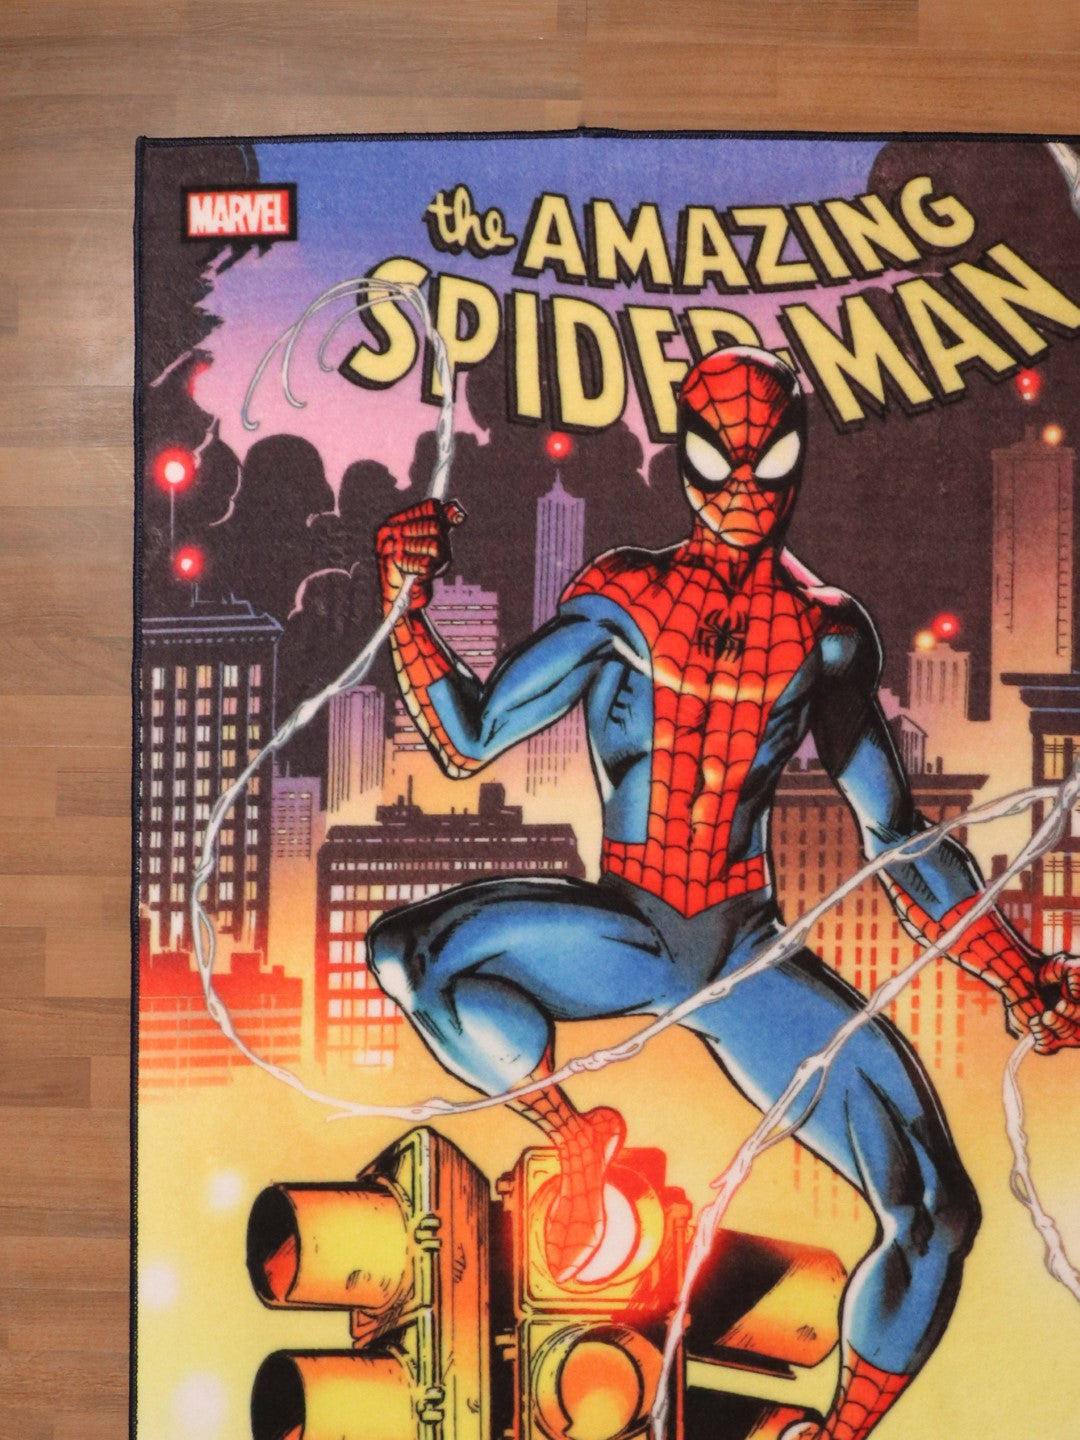 Multi Color Spider-Man Artwork Print Rug